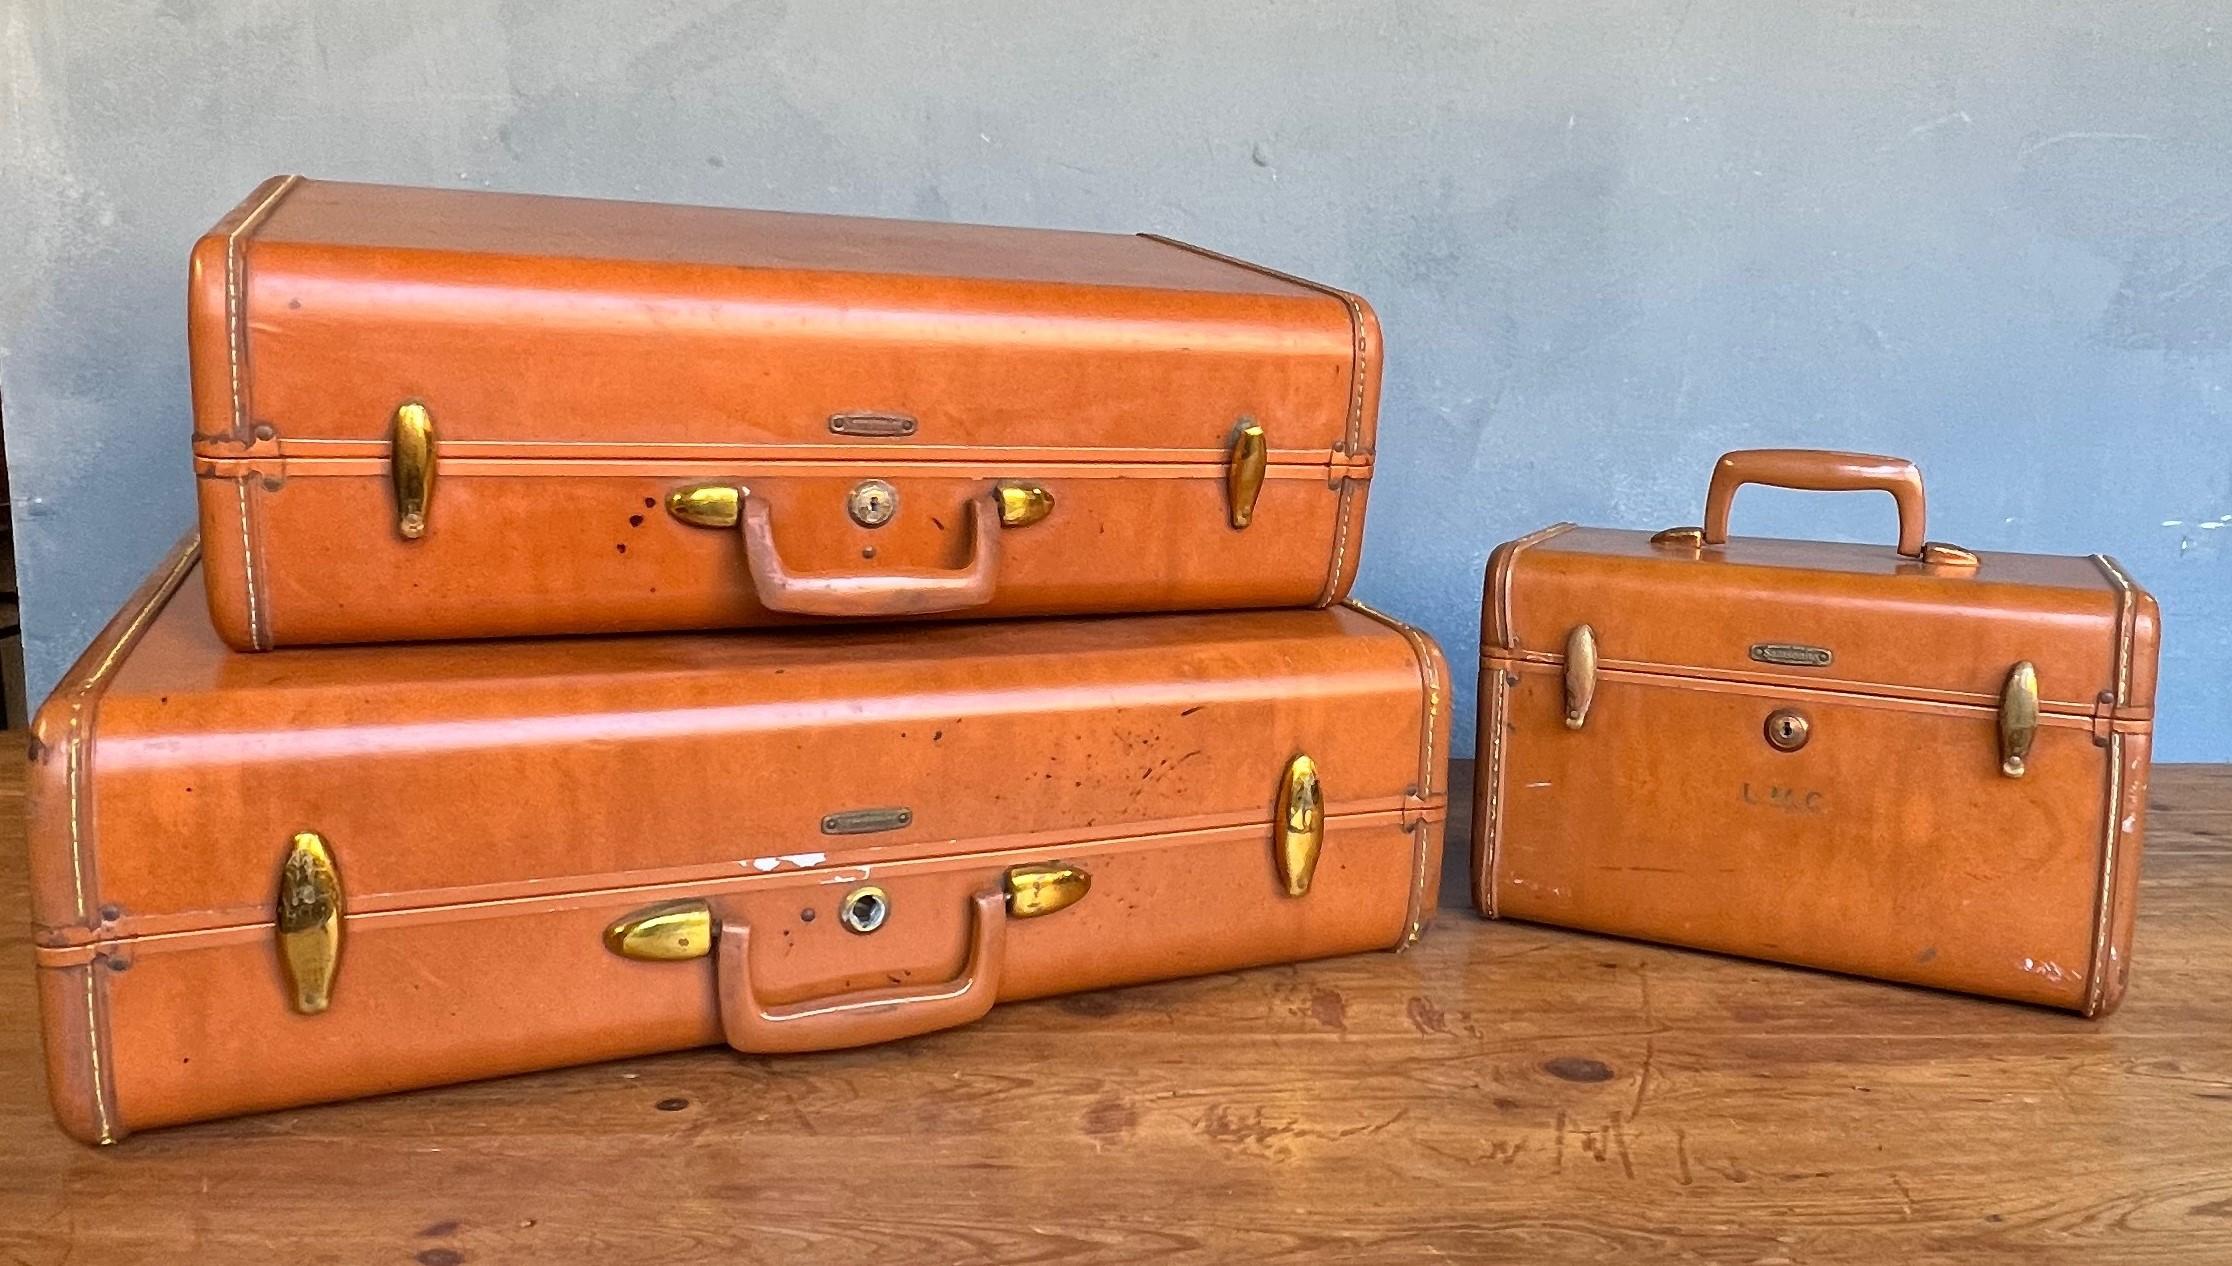 Samsonite Vintage Suitcases - 2 For Sale on 1stDibs | vintage samsonite  luggage, samsonite vintage luggage, samsonite luggage vintage